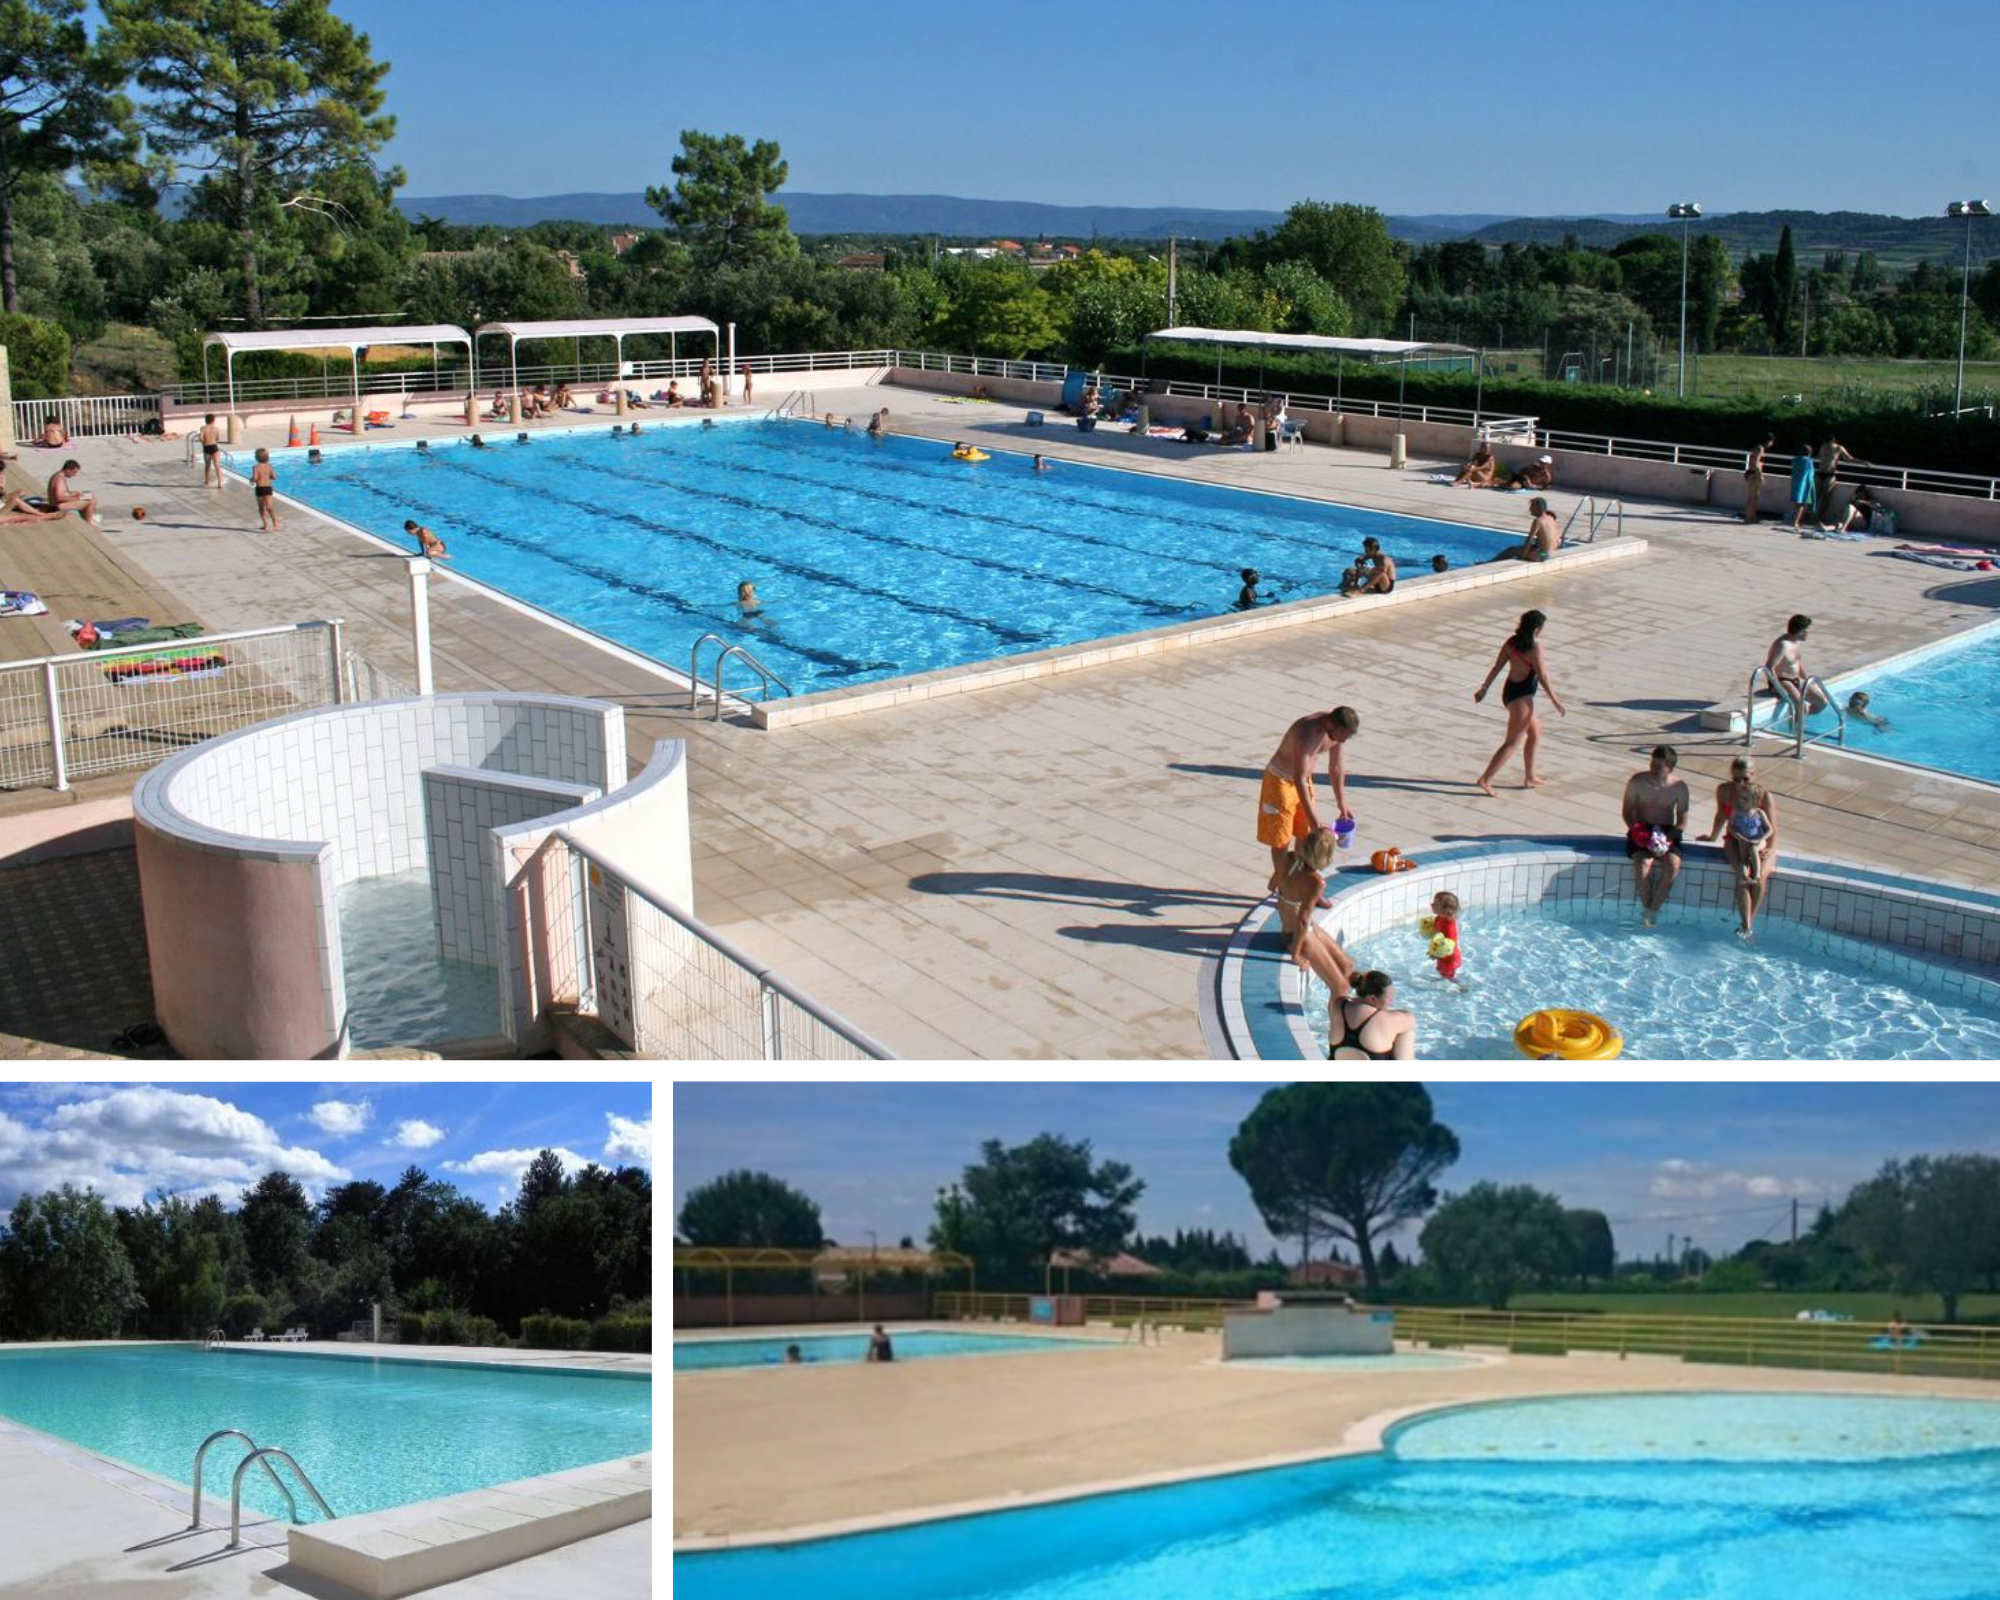 Swimming pool areas near Mont Ventoux, Bédoin, Carpentras, Ville sur Auzon, Beaumes de Venise...